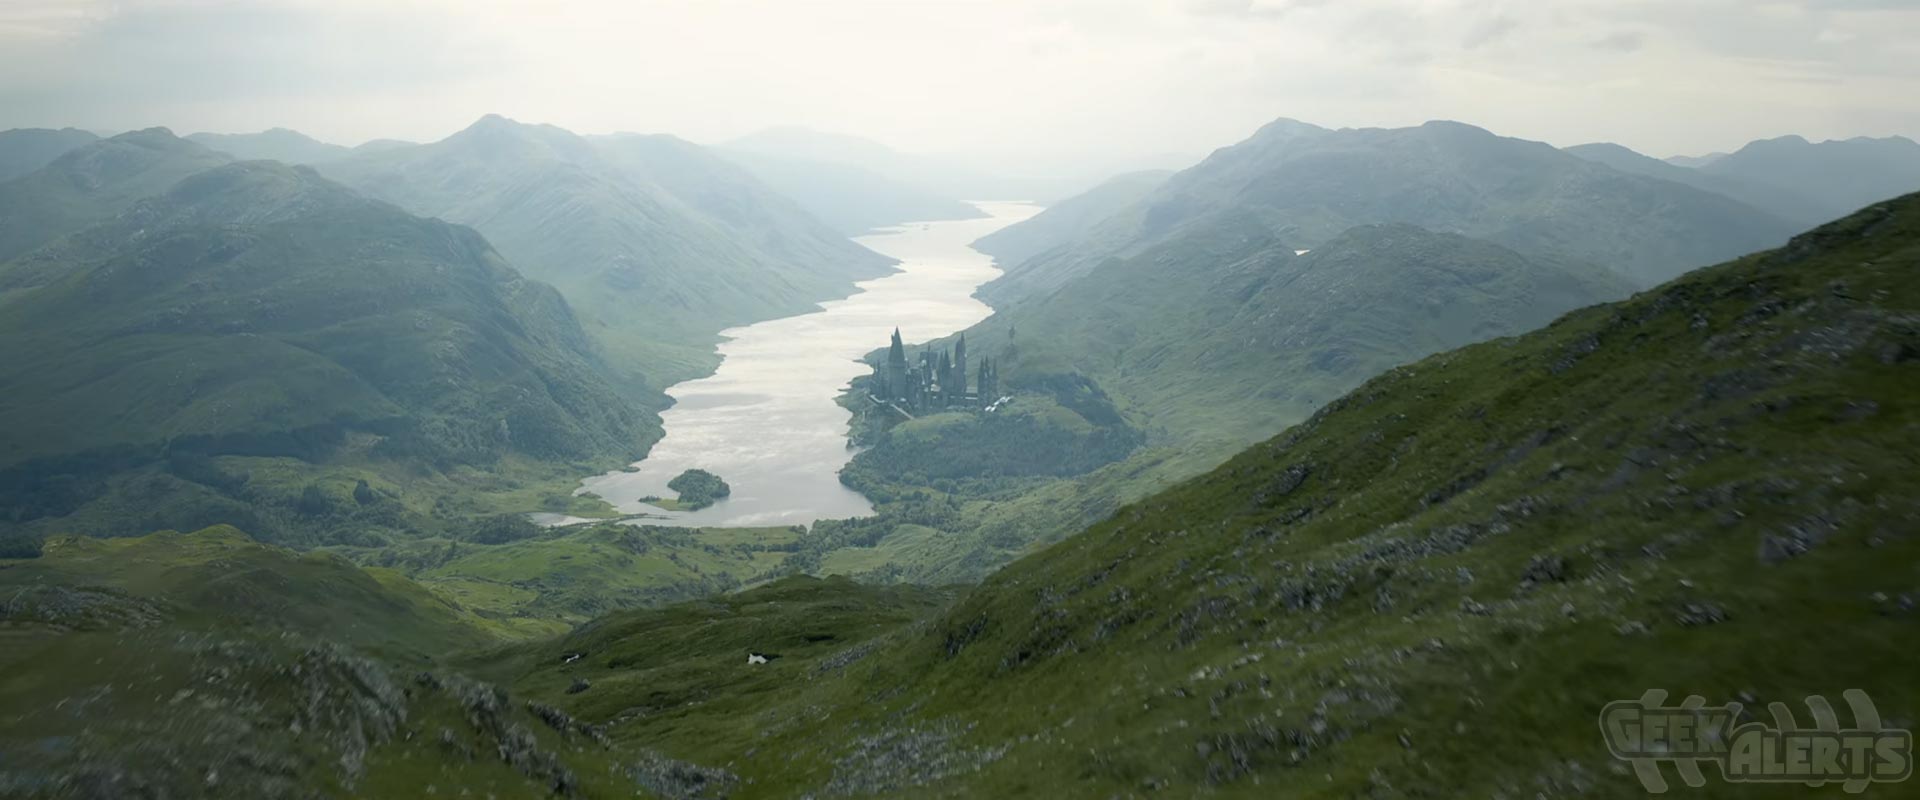 Fantastic Beasts The Crimes Of Grindelwald Teaser Trailer